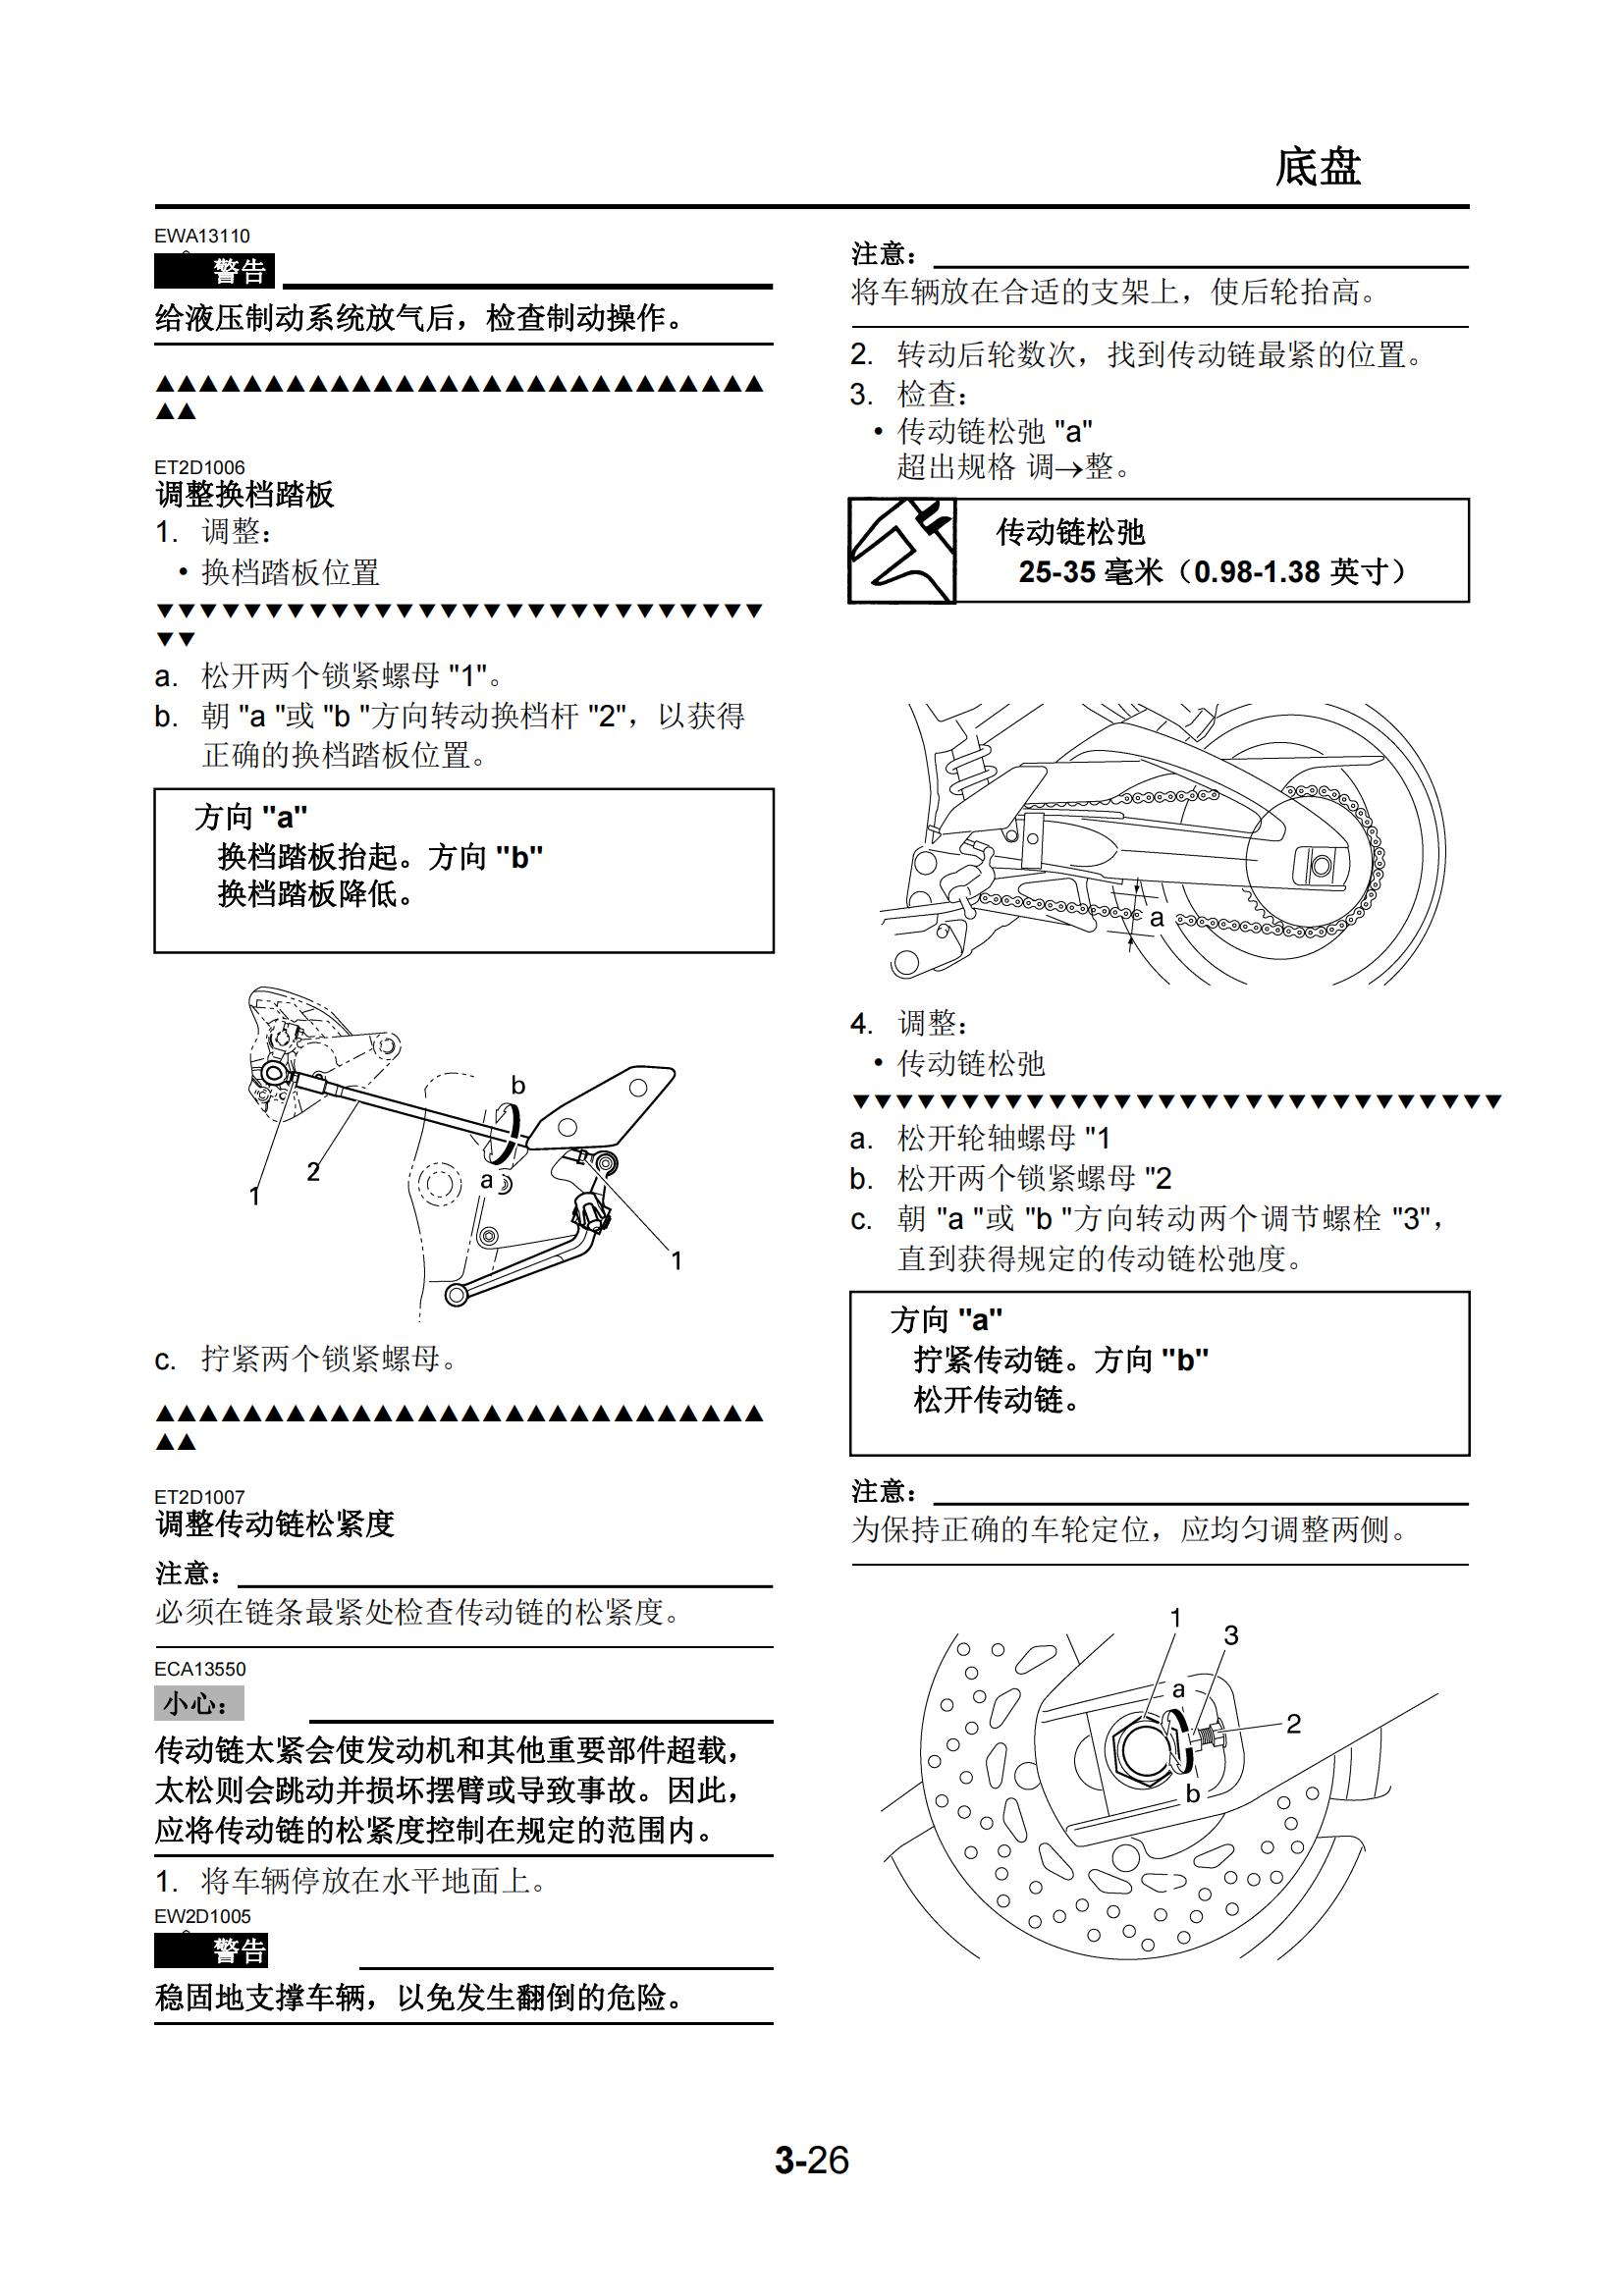 简体中文2006年雅马哈fz1n维修手册fz1s维修手册插图4